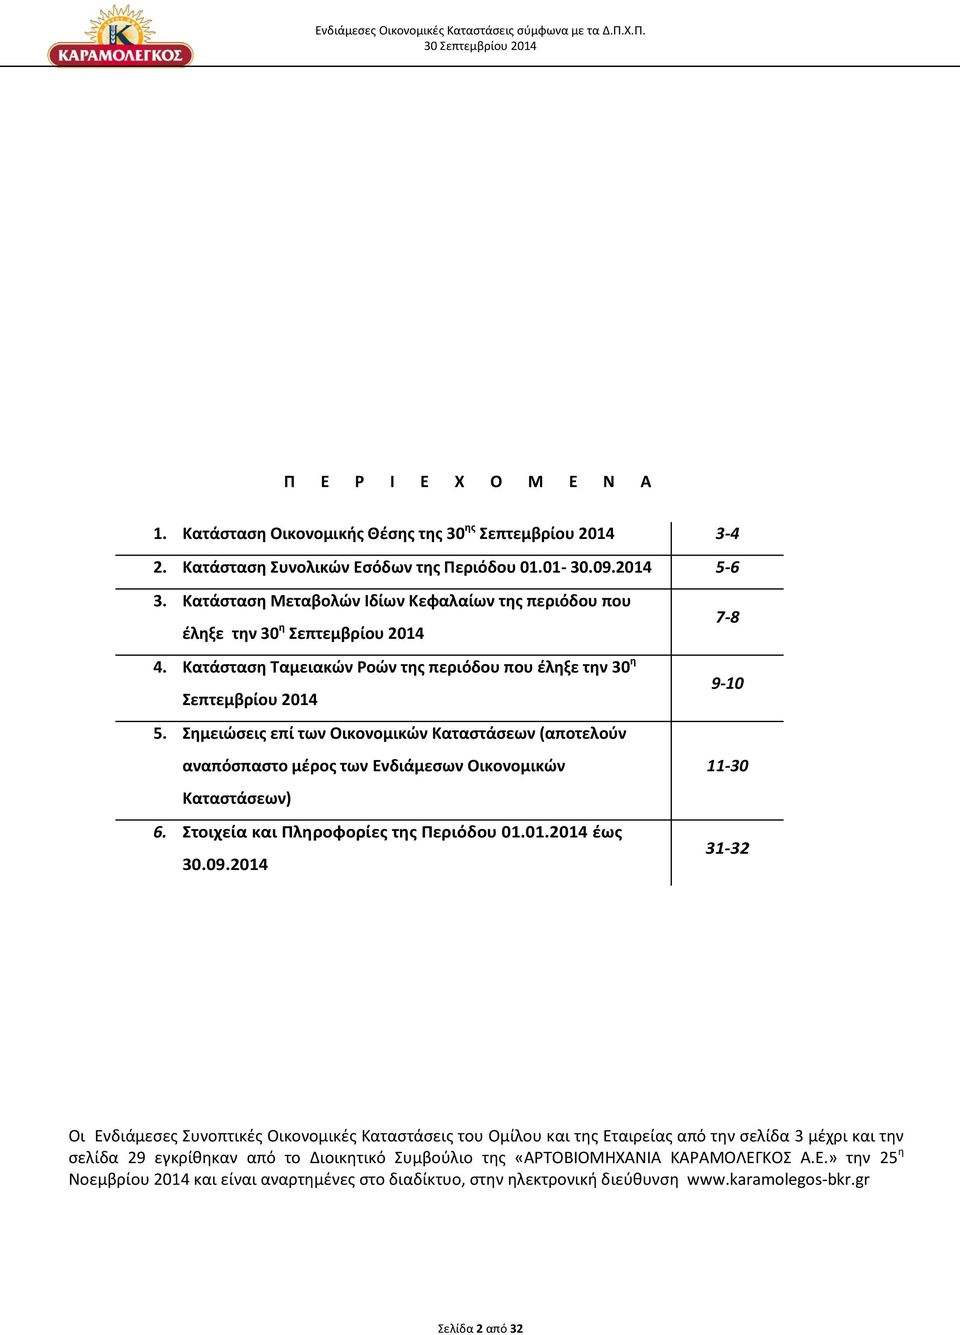 Σημειώσεις επί των Οικονομικών Καταστάσεων (αποτελούν αναπόσπαστο μέρος των Ενδιάμεσων Οικονομικών Καταστάσεων) 6. Στοιχεία και Πληροφορίες της Περιόδου 01.01.2014 έως 30.09.